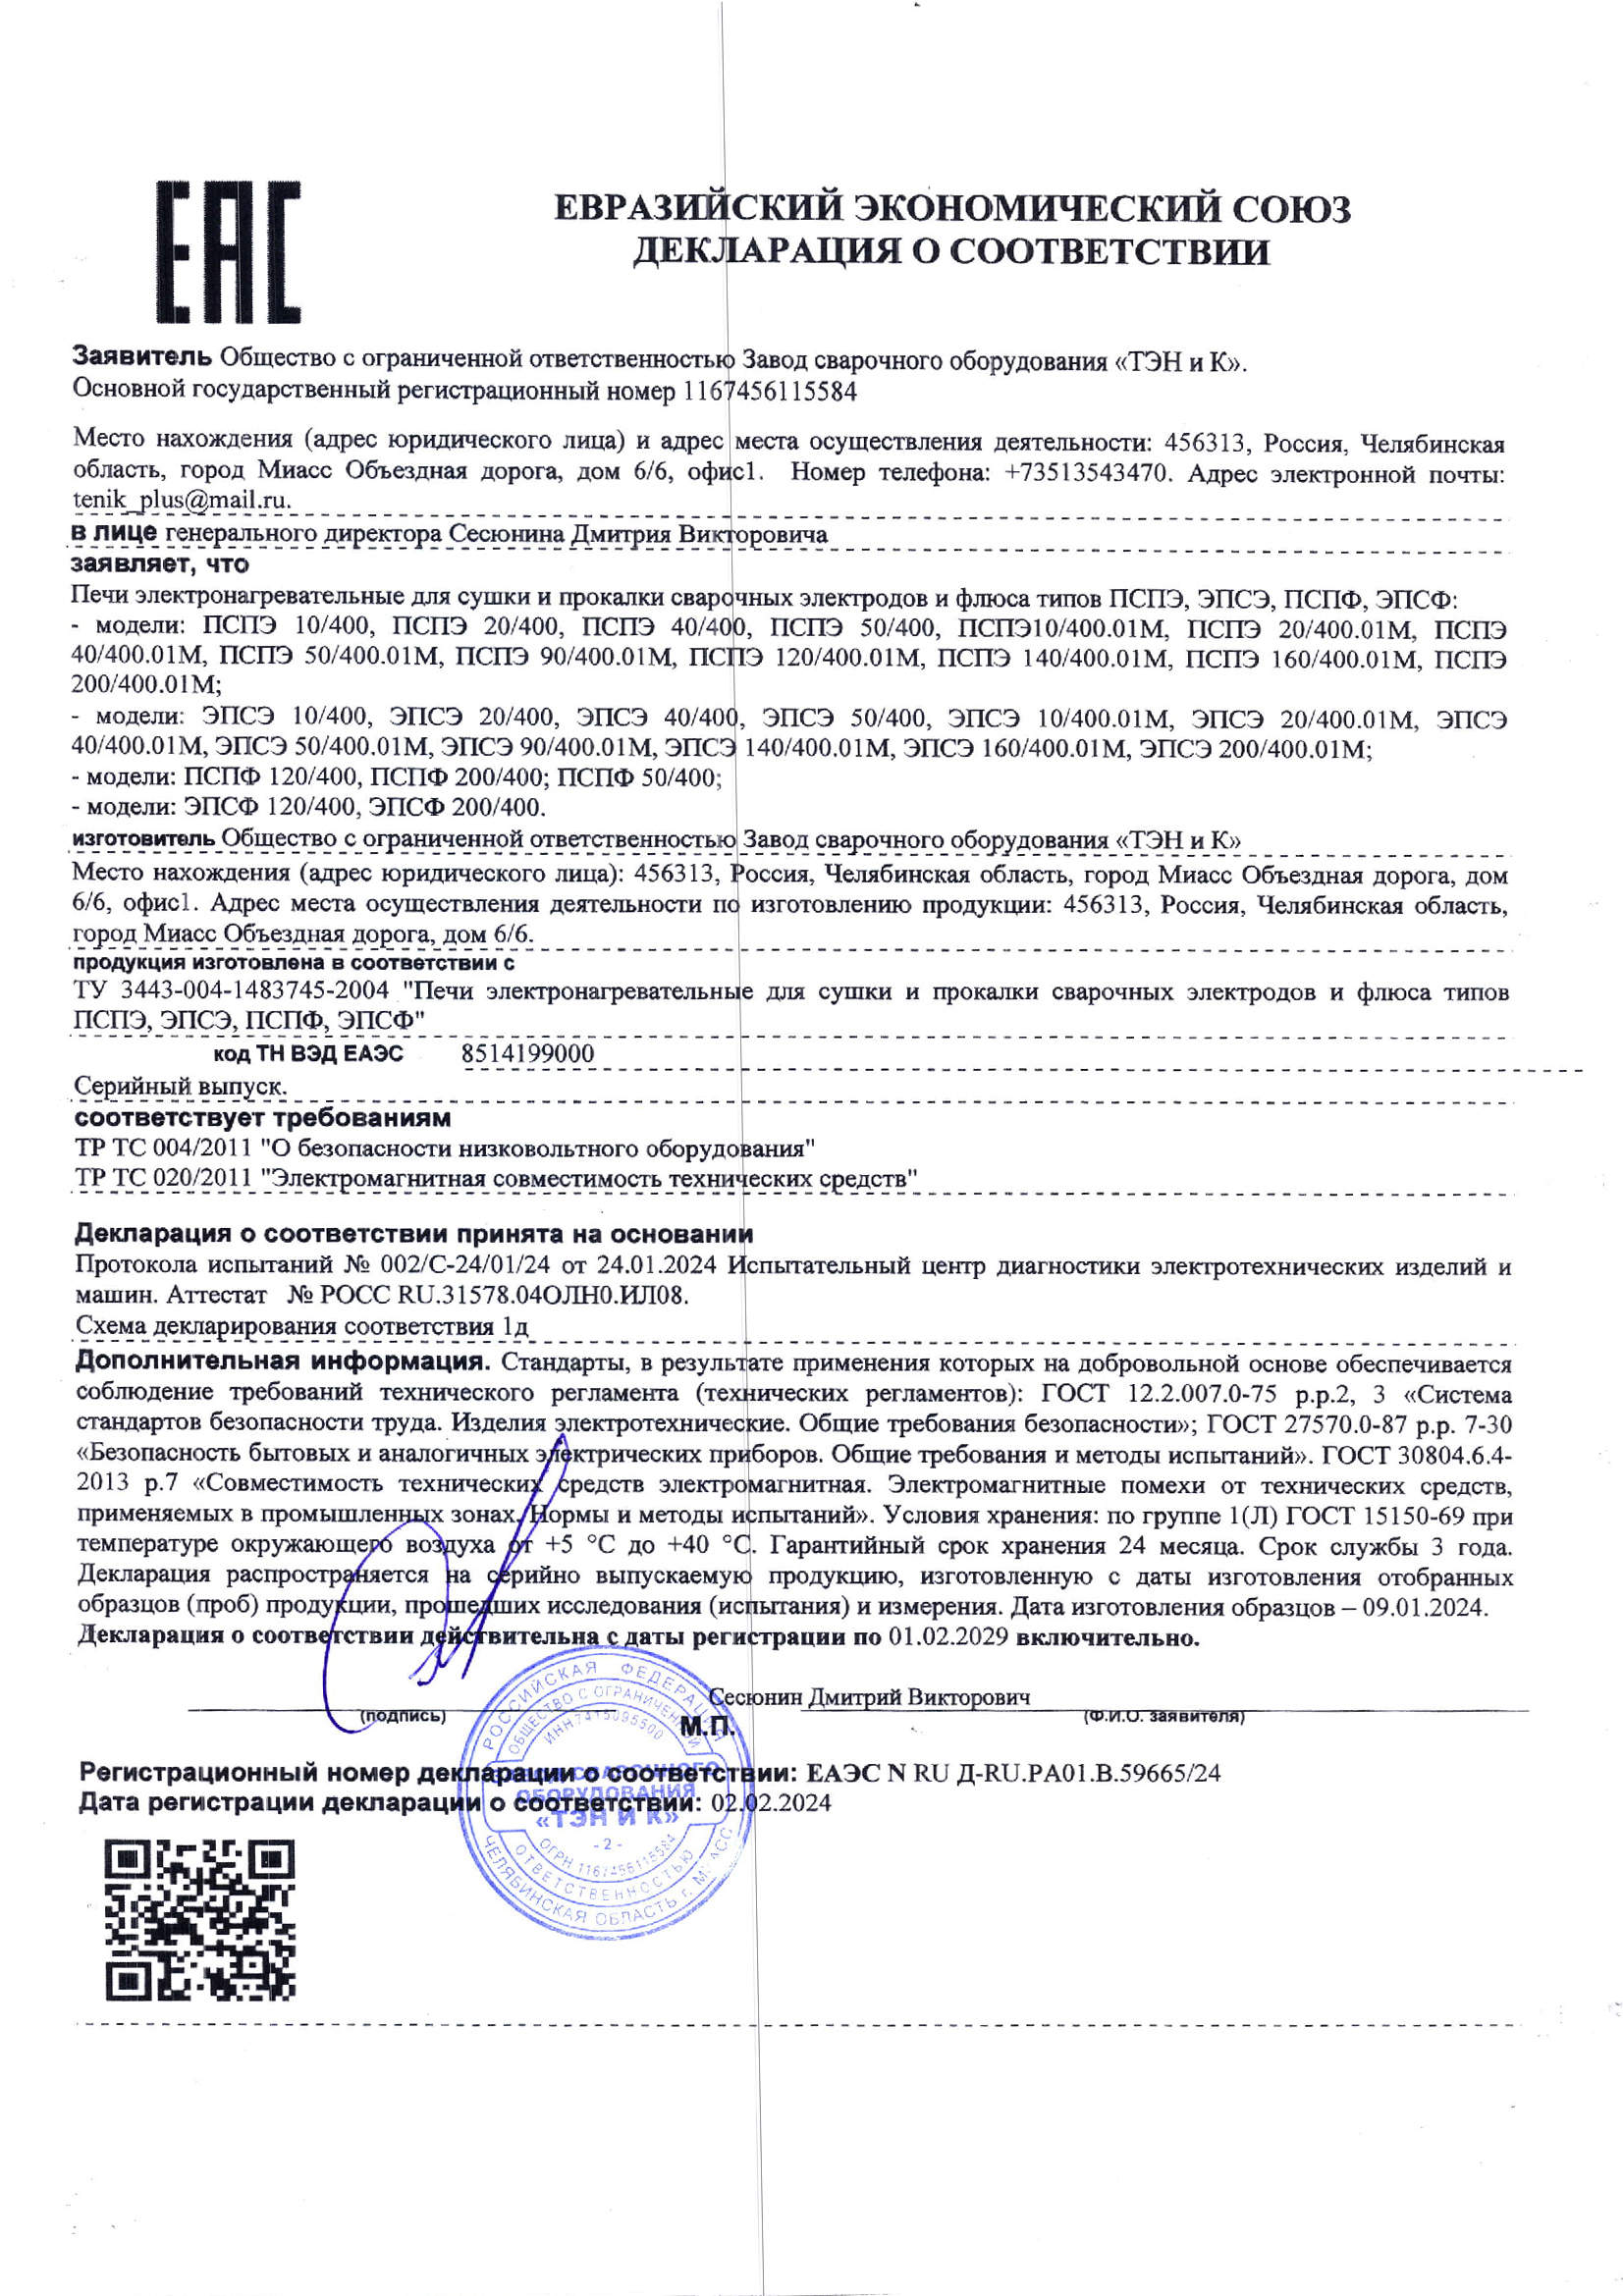 Декларация о соответствии на электропечи для прокалки и сушки флюса, с 2019 по 2024 год